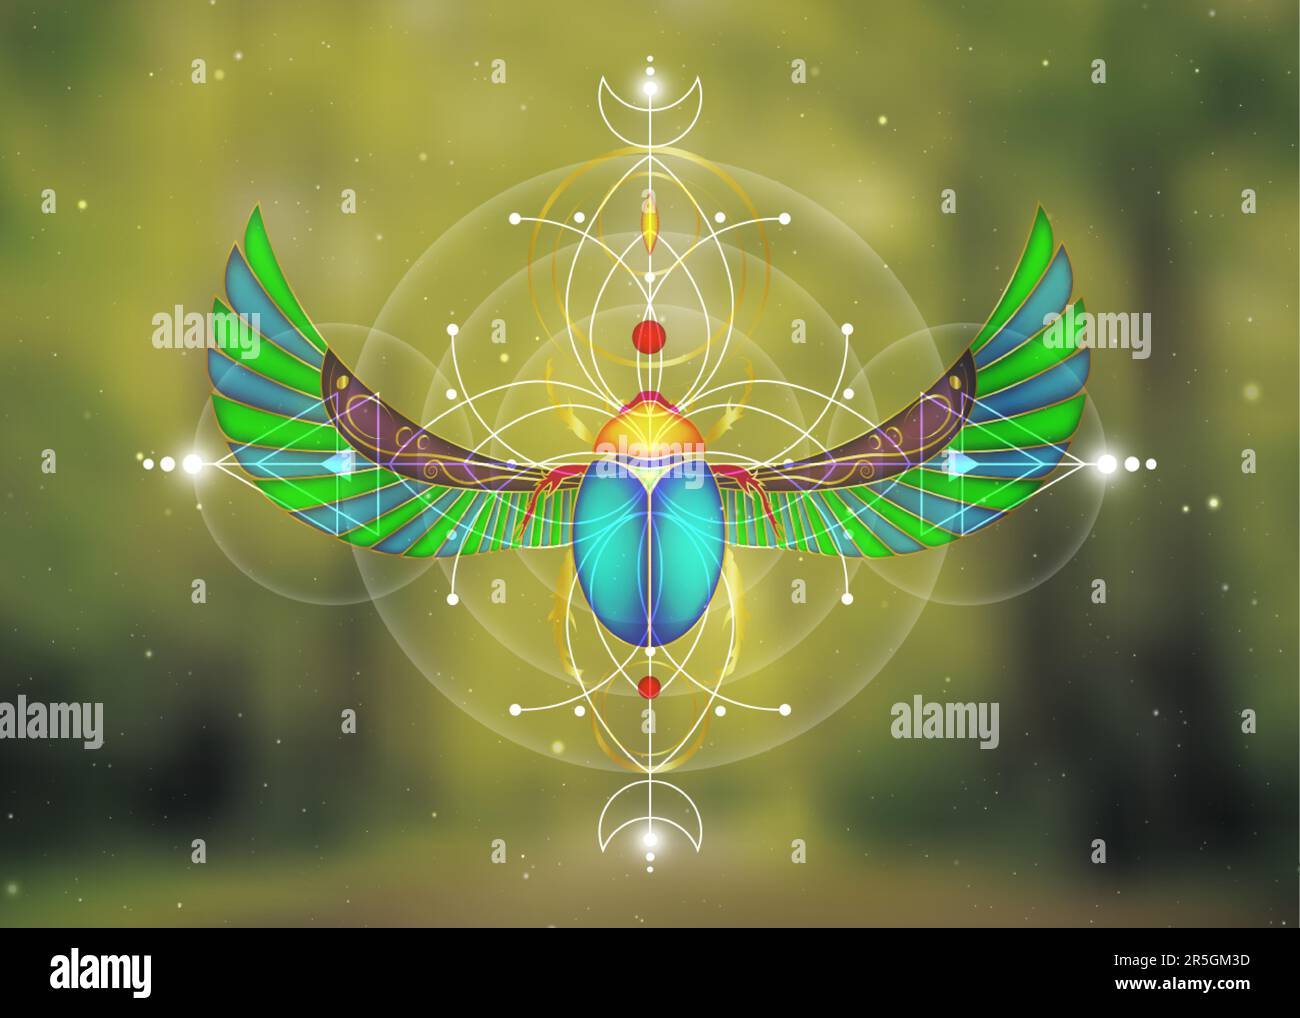 Heilige Geometrie, Scarab-Käfer auf der Blume des Lebens, mystische Zeichnung von Kreisen, Dreiecken, Mond, Energieschema. Symbole der Alchemie, Magie, Esoterie Stock Vektor